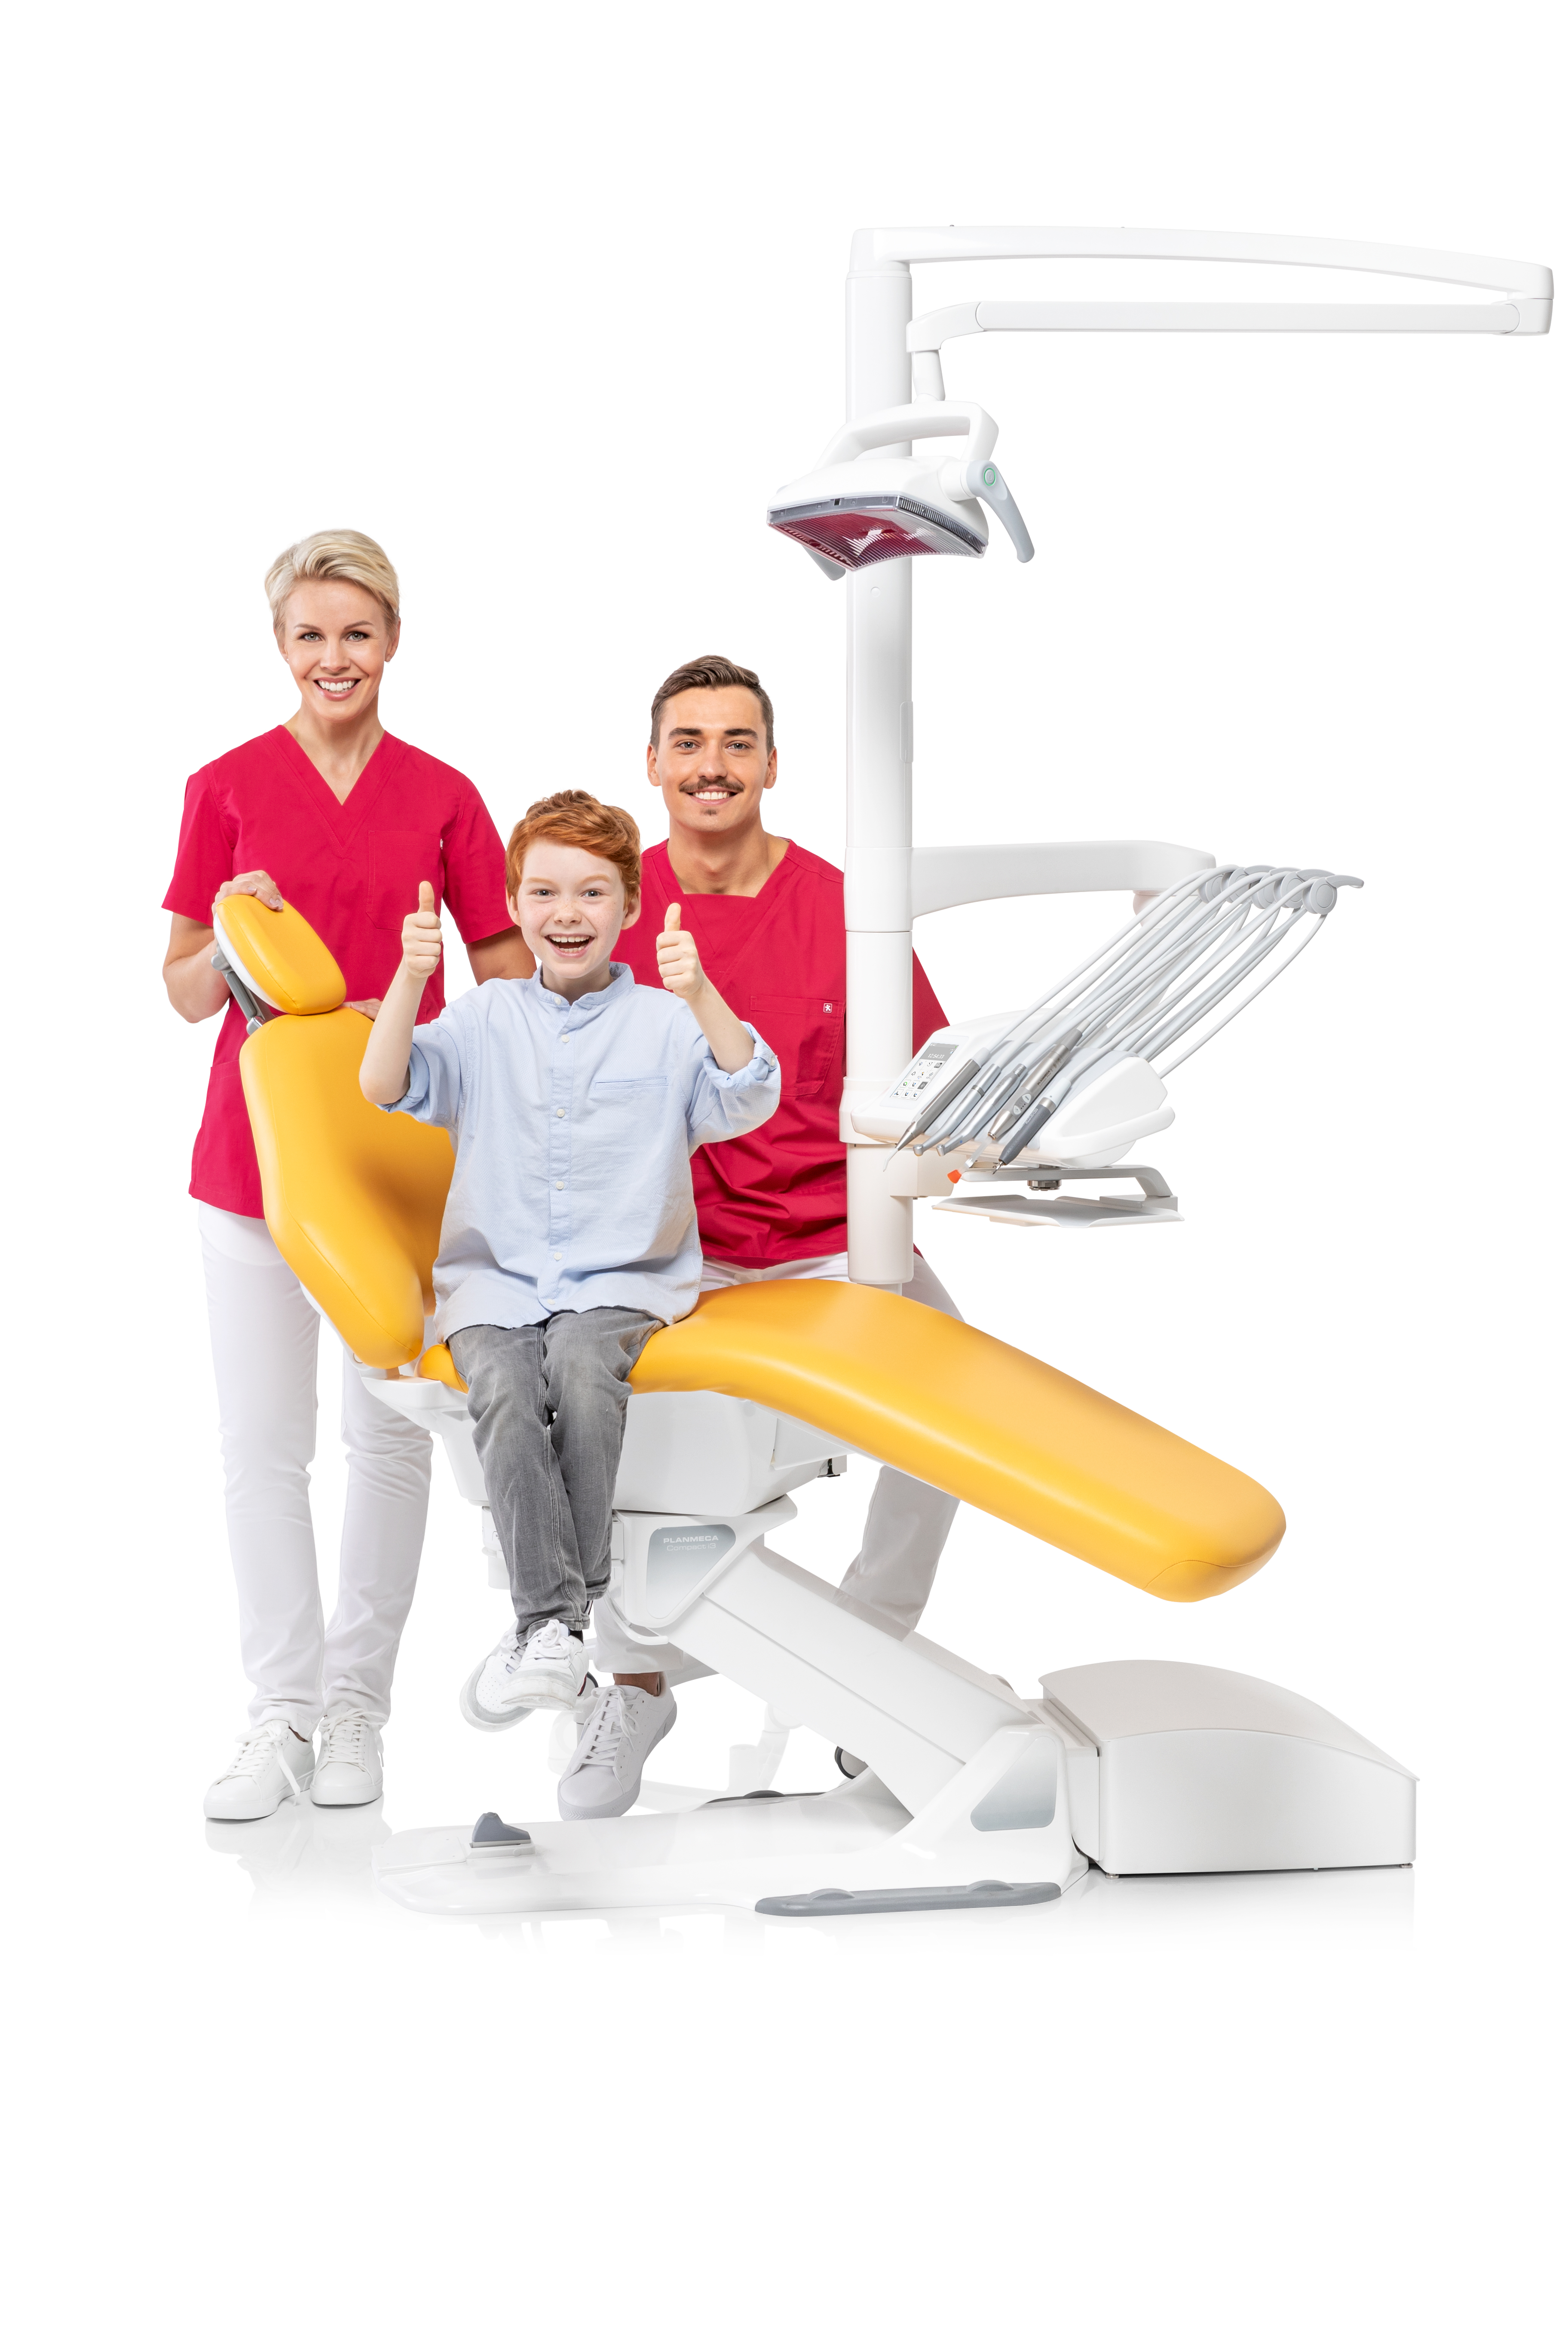 Nowy unit stomatologiczny Planmeca oferuje funkcjonalność i elastyczność dla każdego dentysty